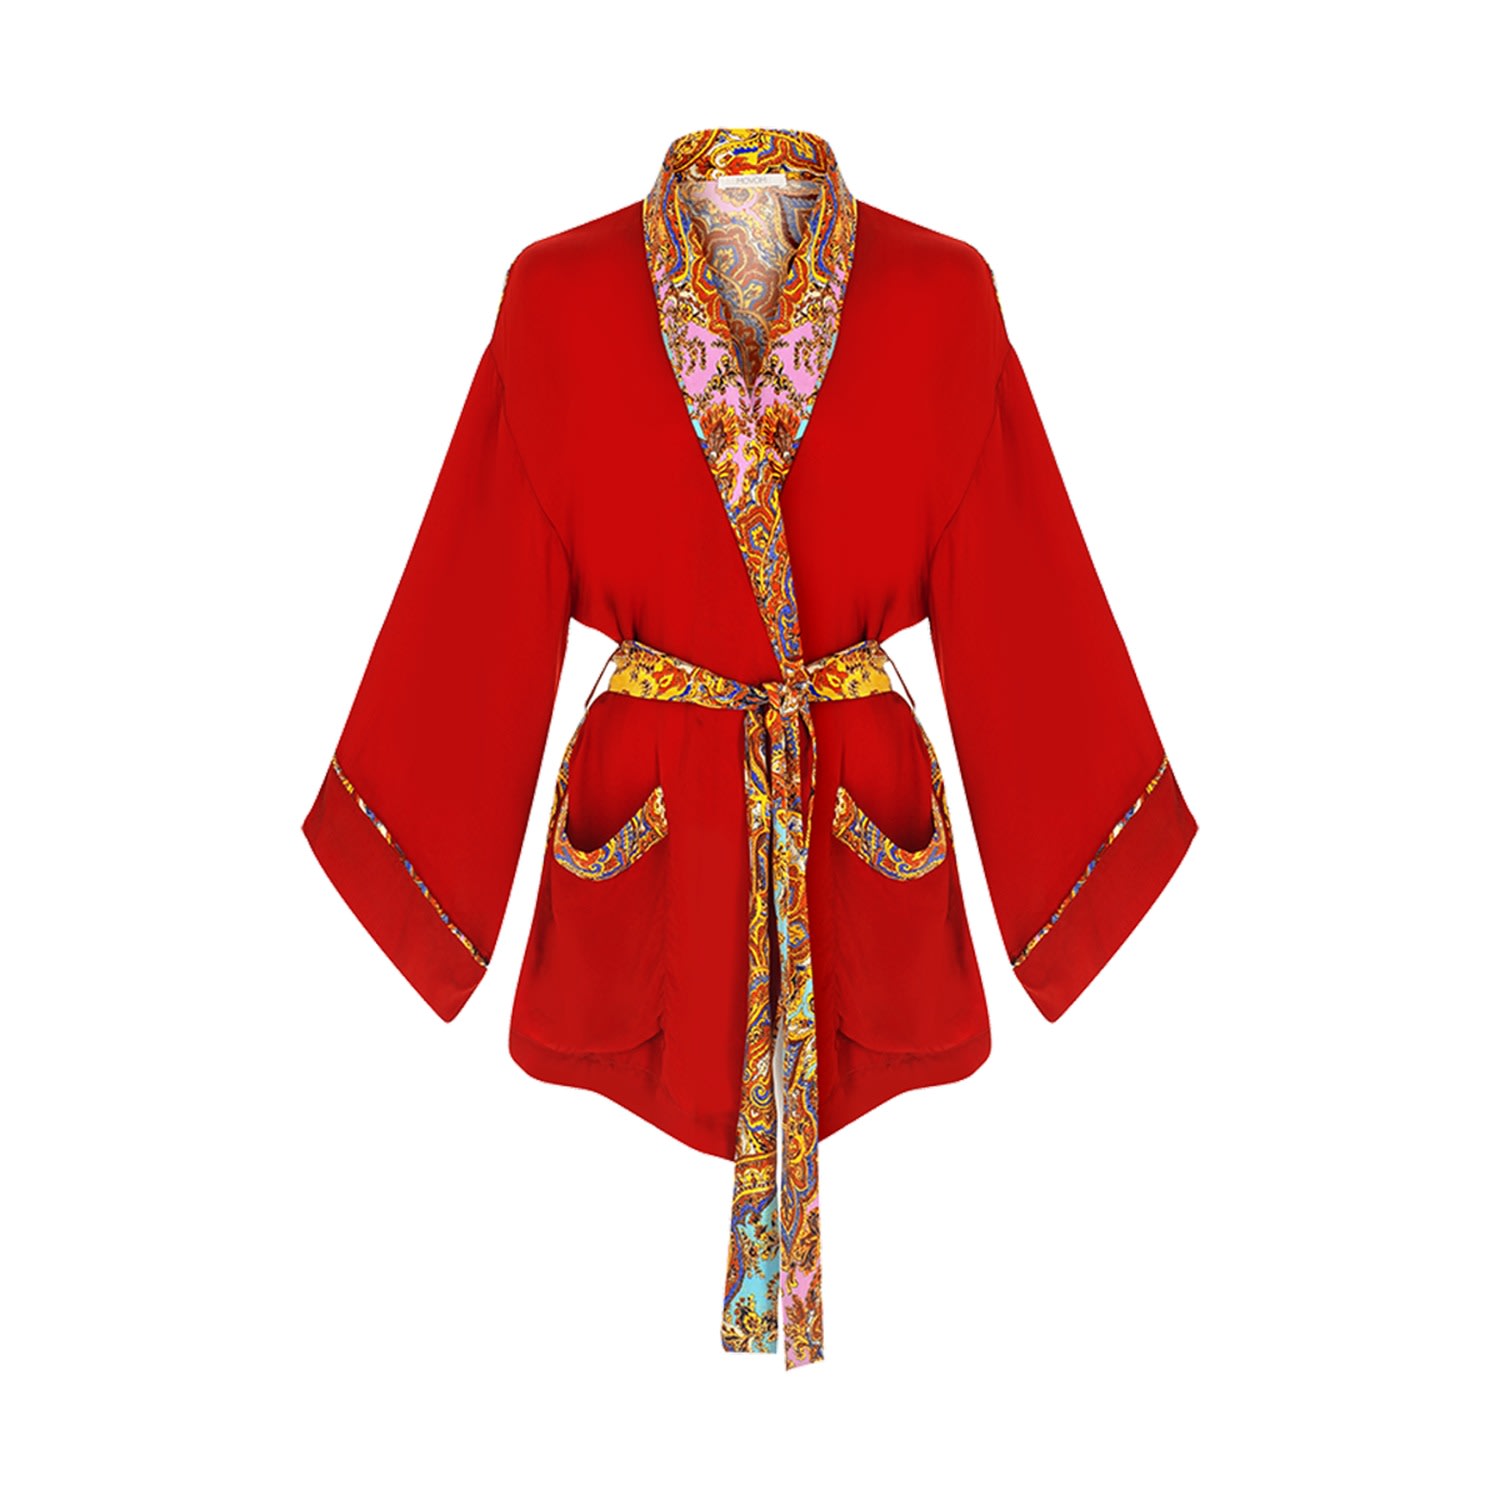 Movom Women's Red Poppy Robe